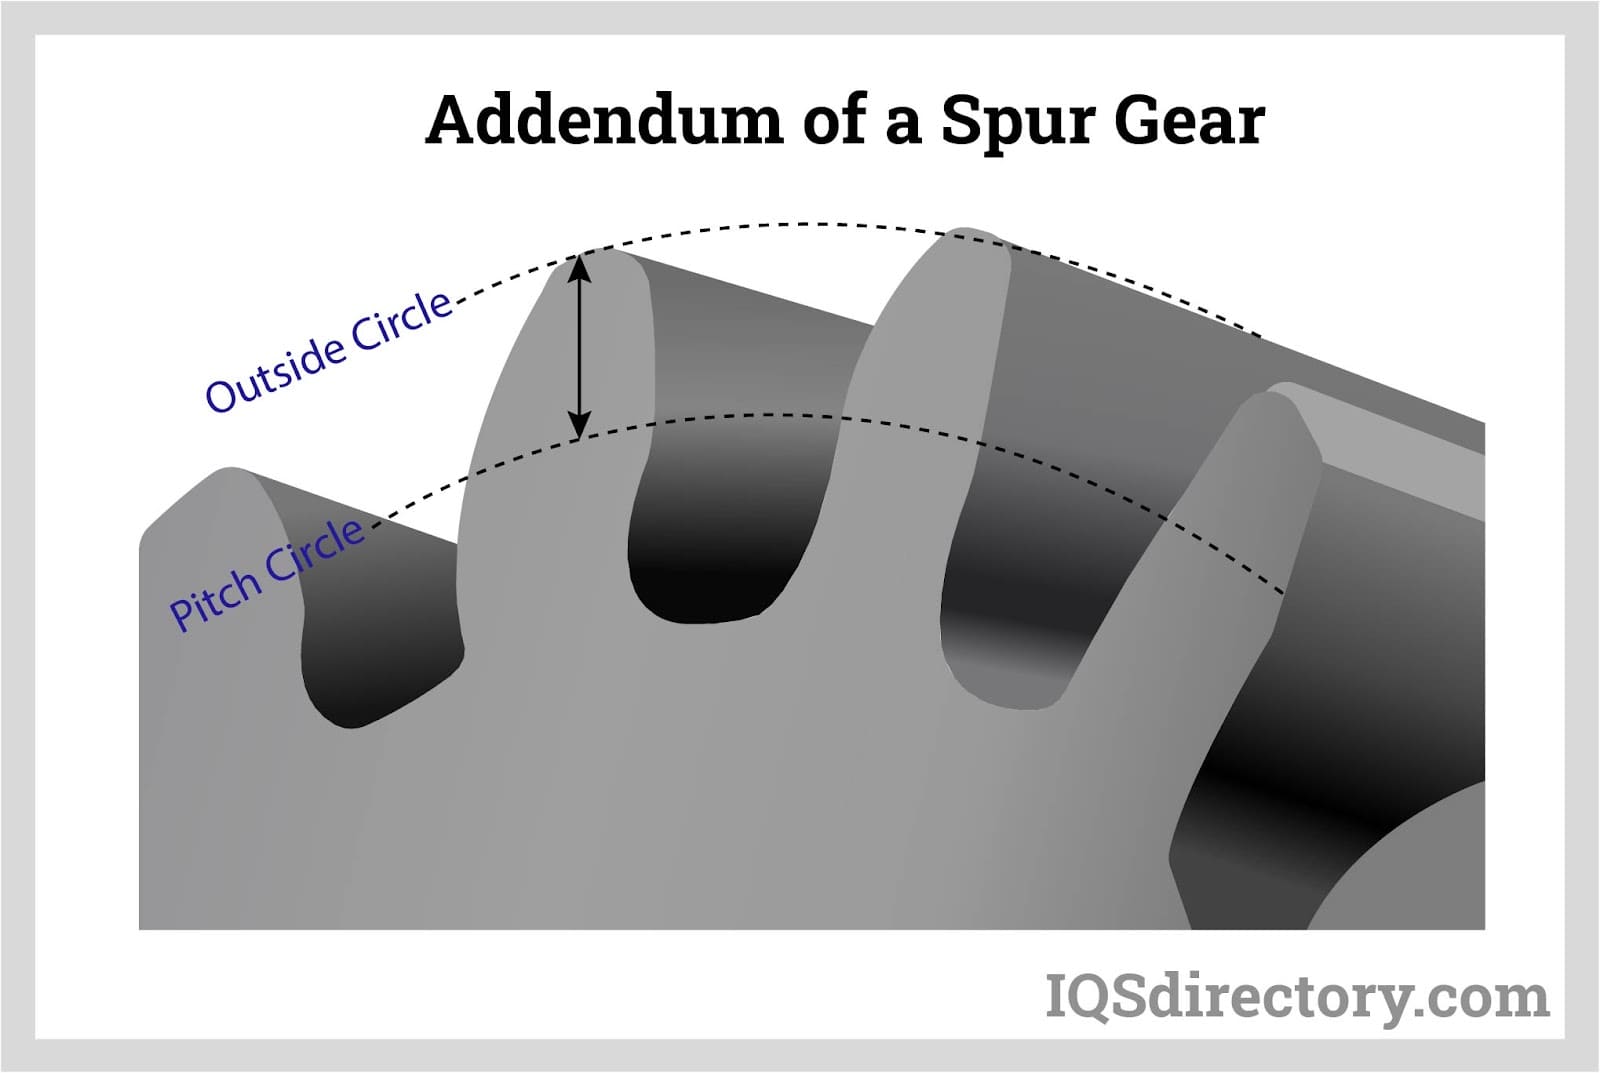 Addendum of a Spur Gear